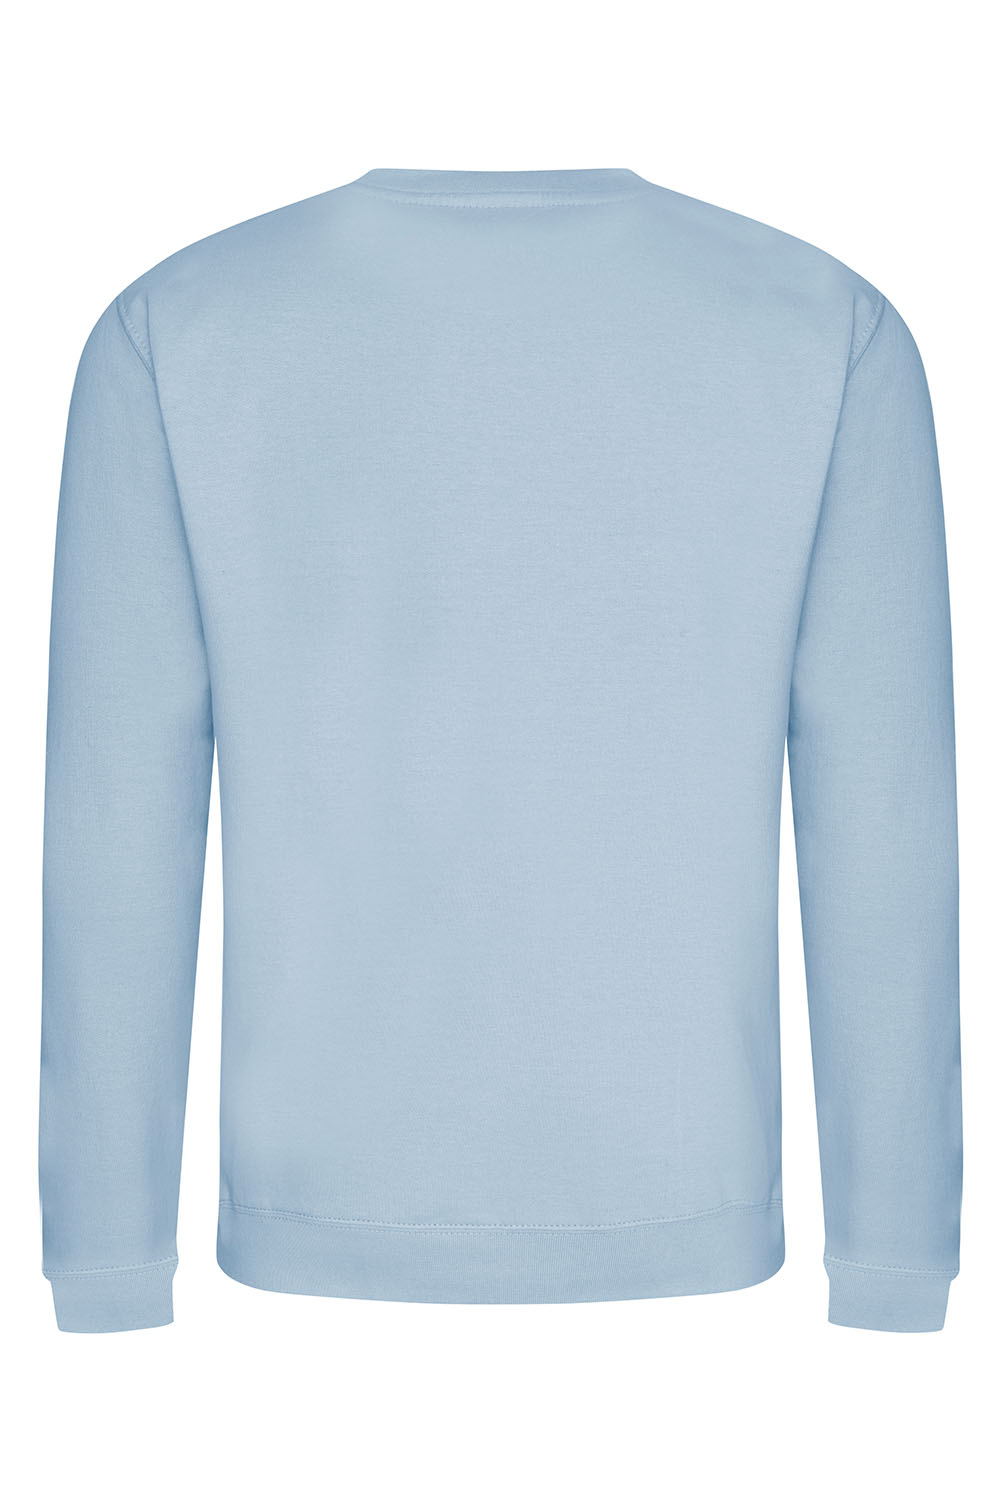 Manhattan Sweatshirt In Sky Blue (CUSTOM PACKS)